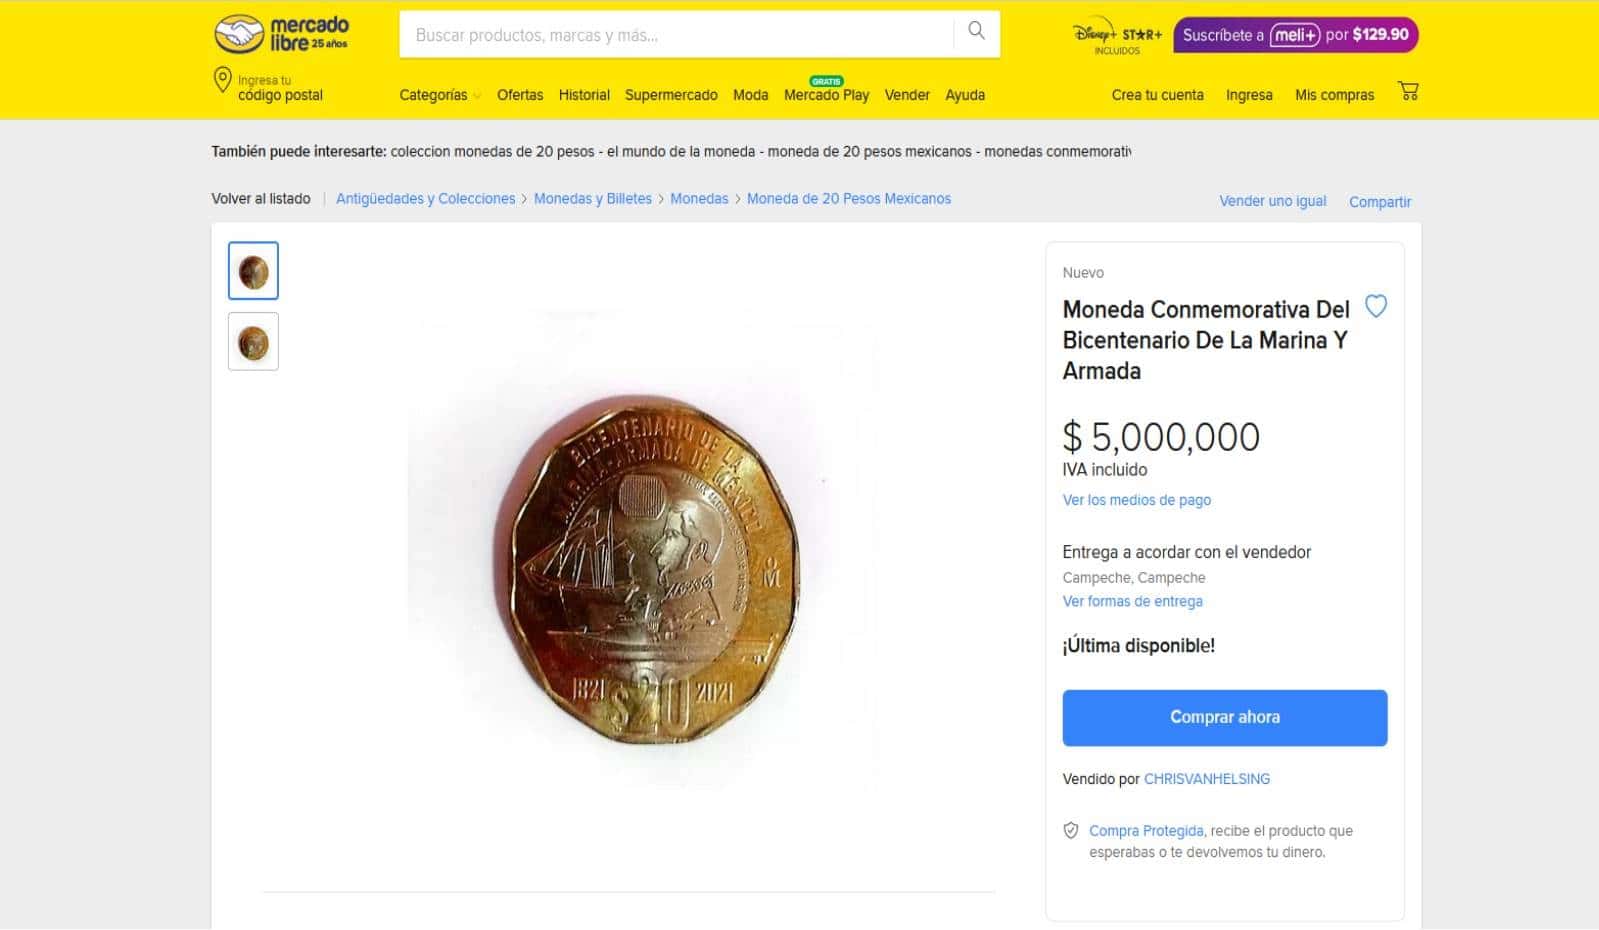 La moneda de 20 pesos conmemorativa que venden en 5 millones de pesos